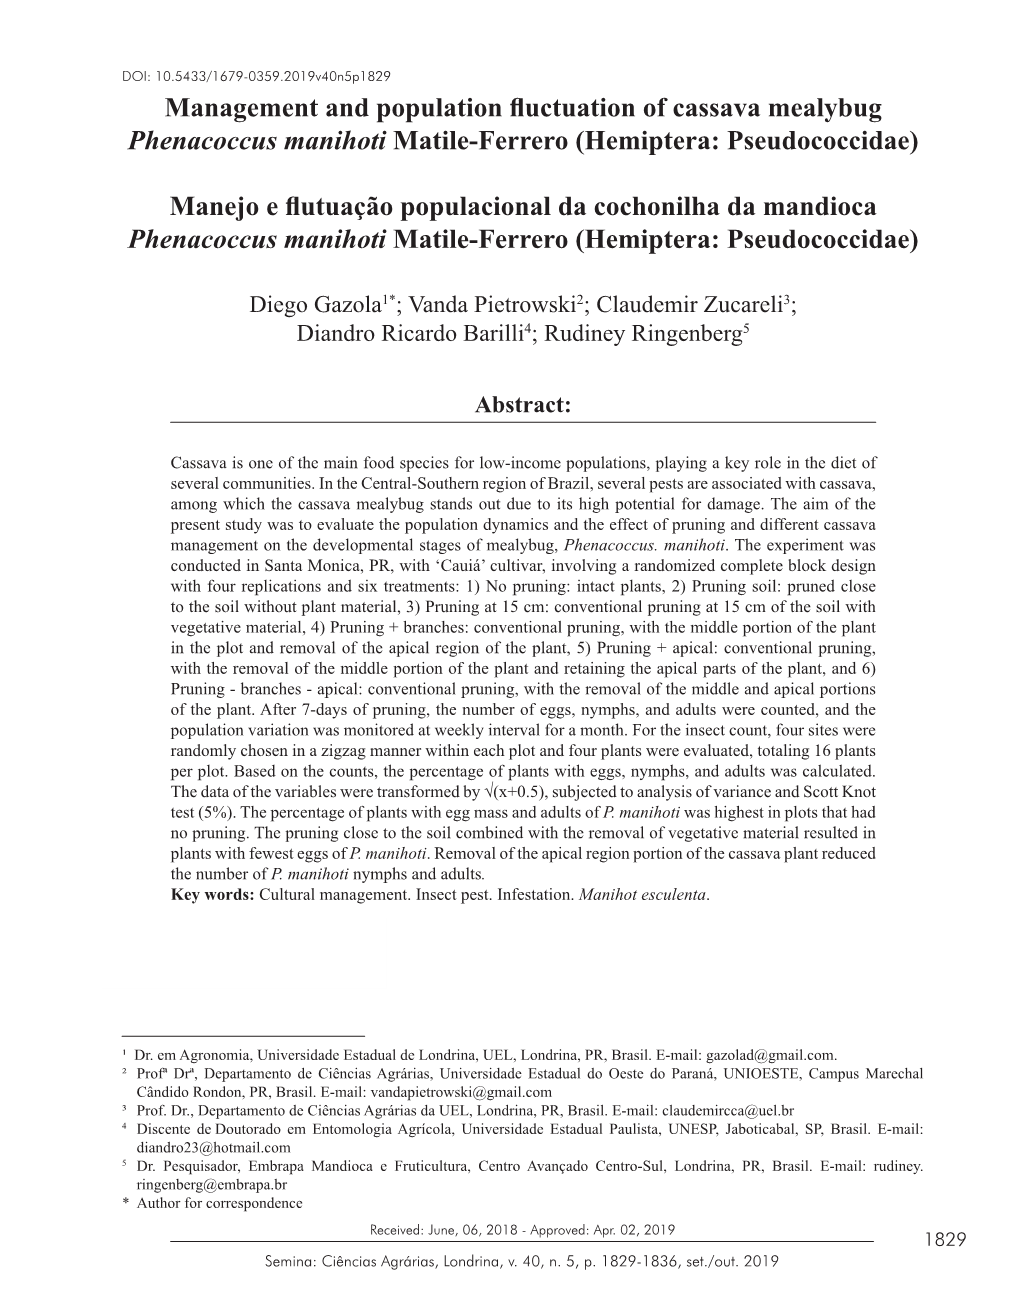 Management and Population Fluctuation of Cassava Mealybug Phenacoccus Manihoti Matile-Ferrero (Hemiptera: Pseudococcidae)